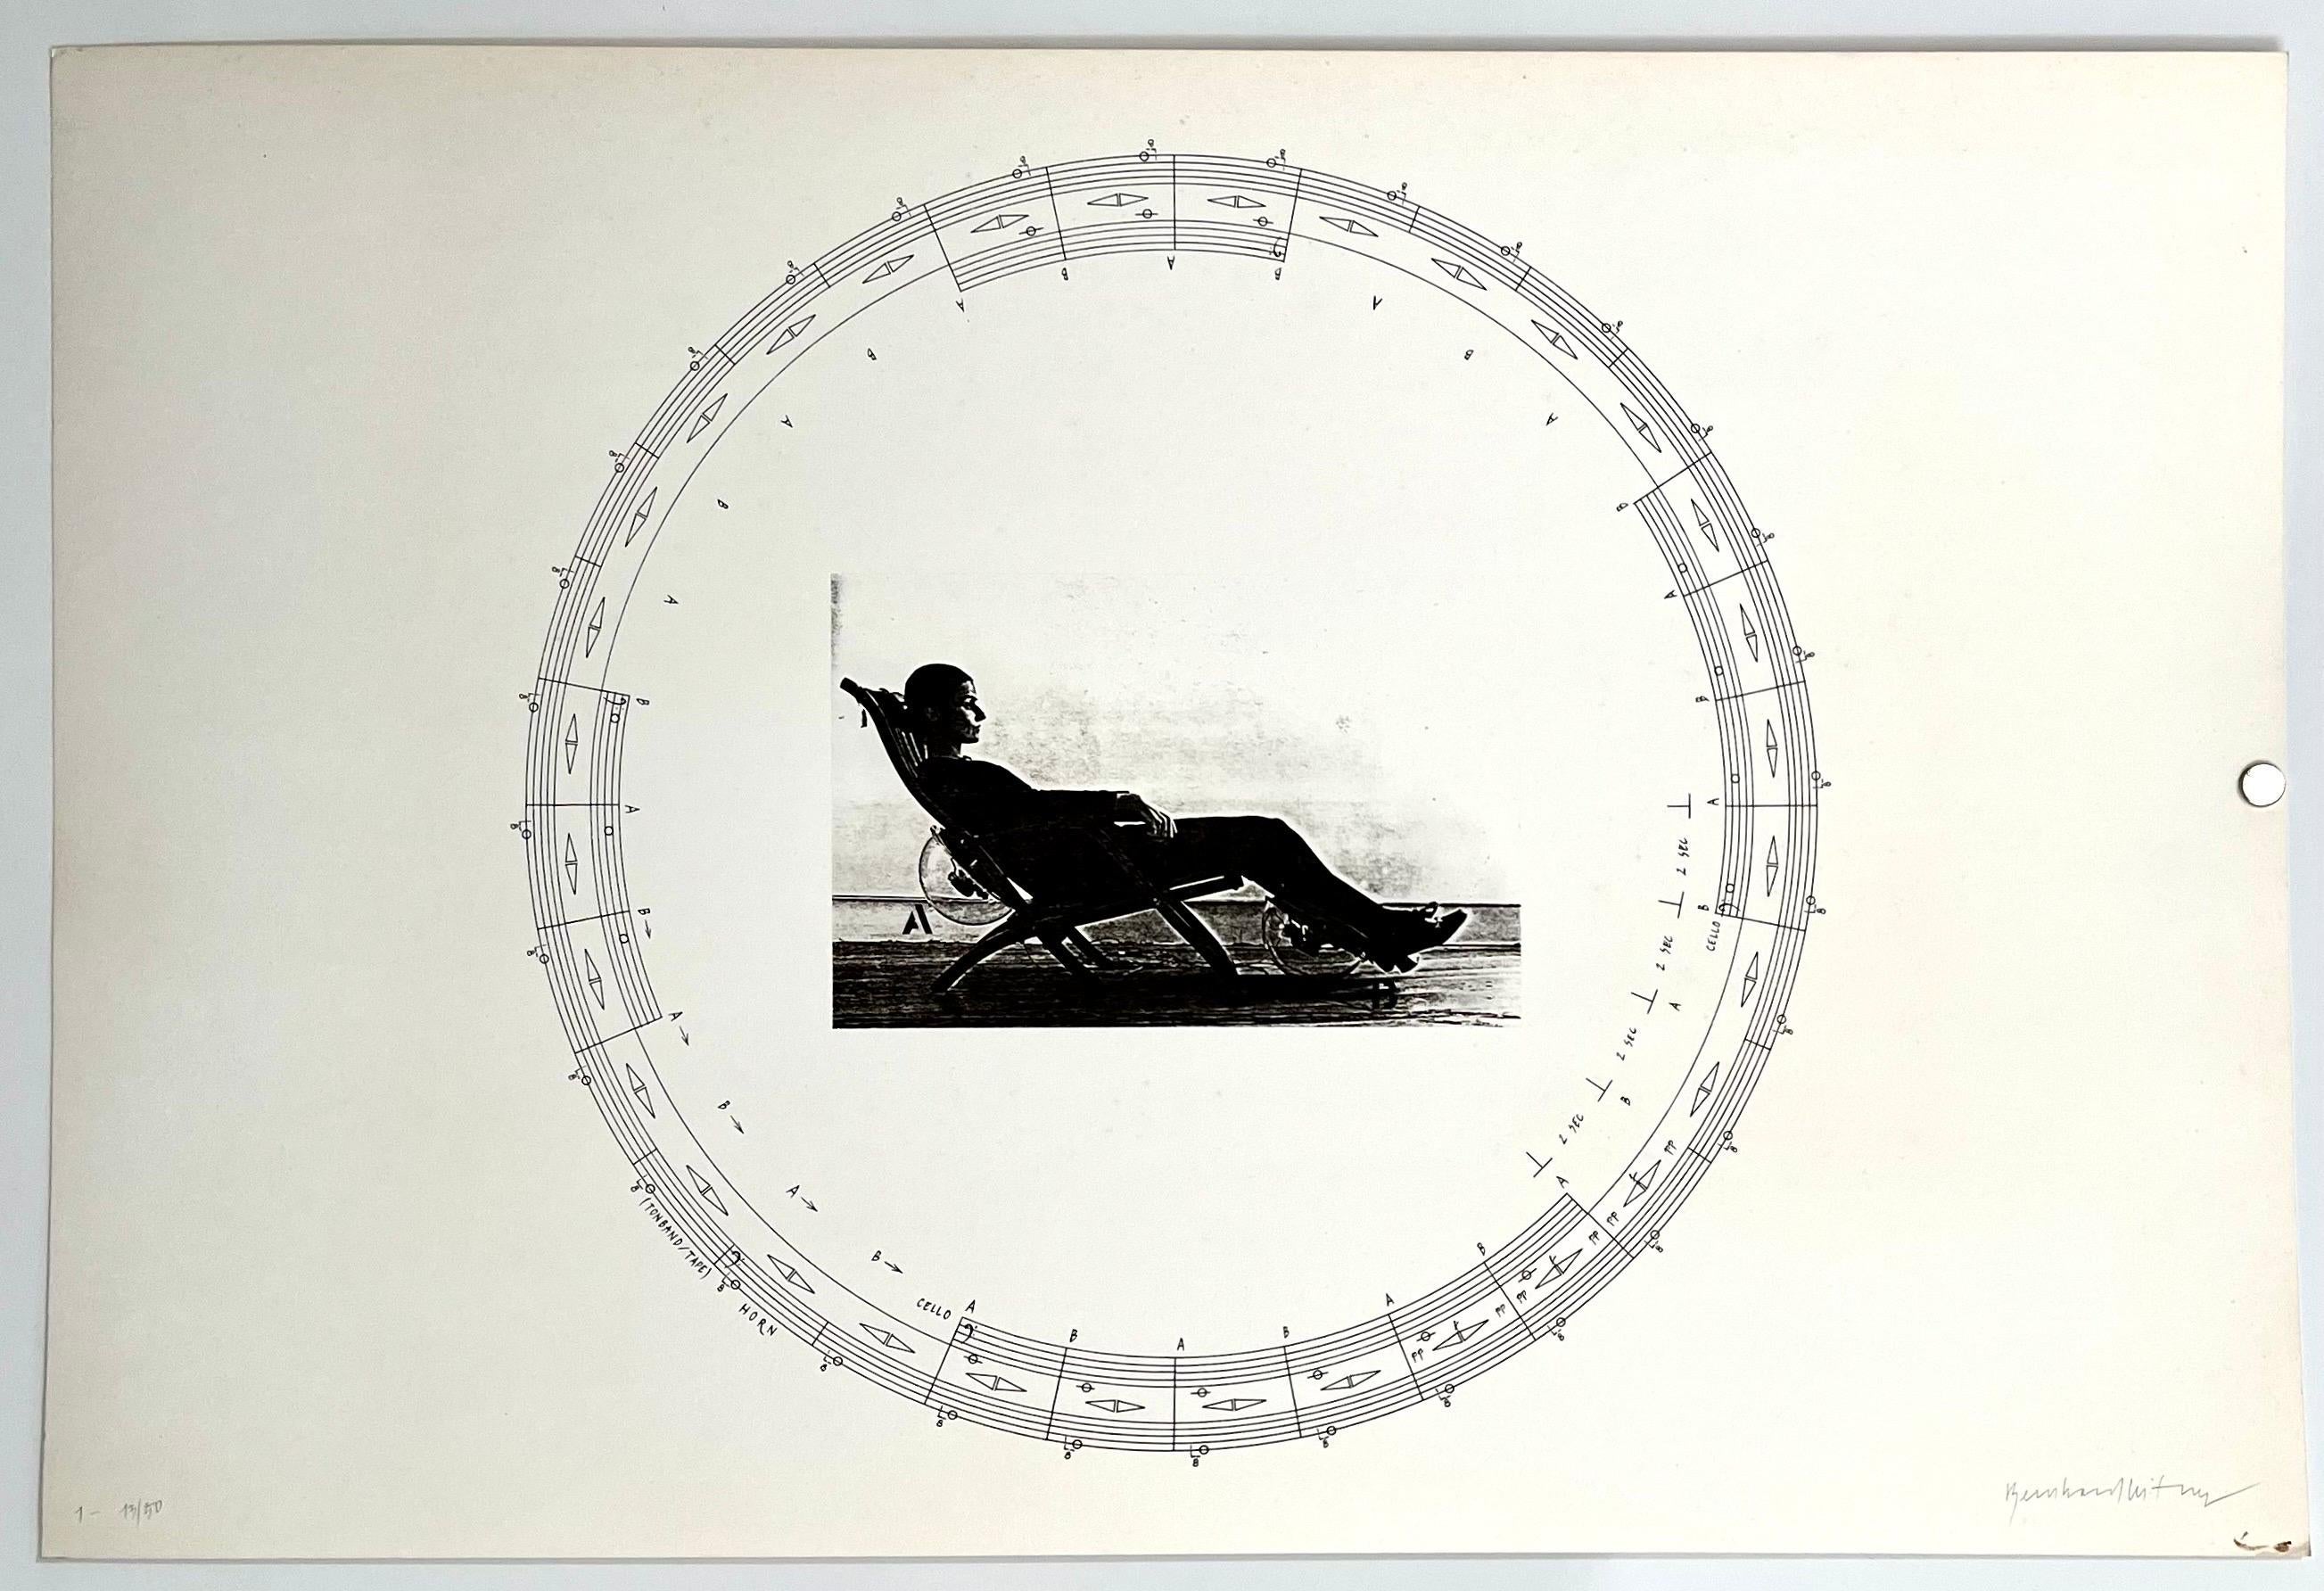 Impression mécanique photographique de Bernhard Leitner, architecte autrichien du Sound Space, signé 